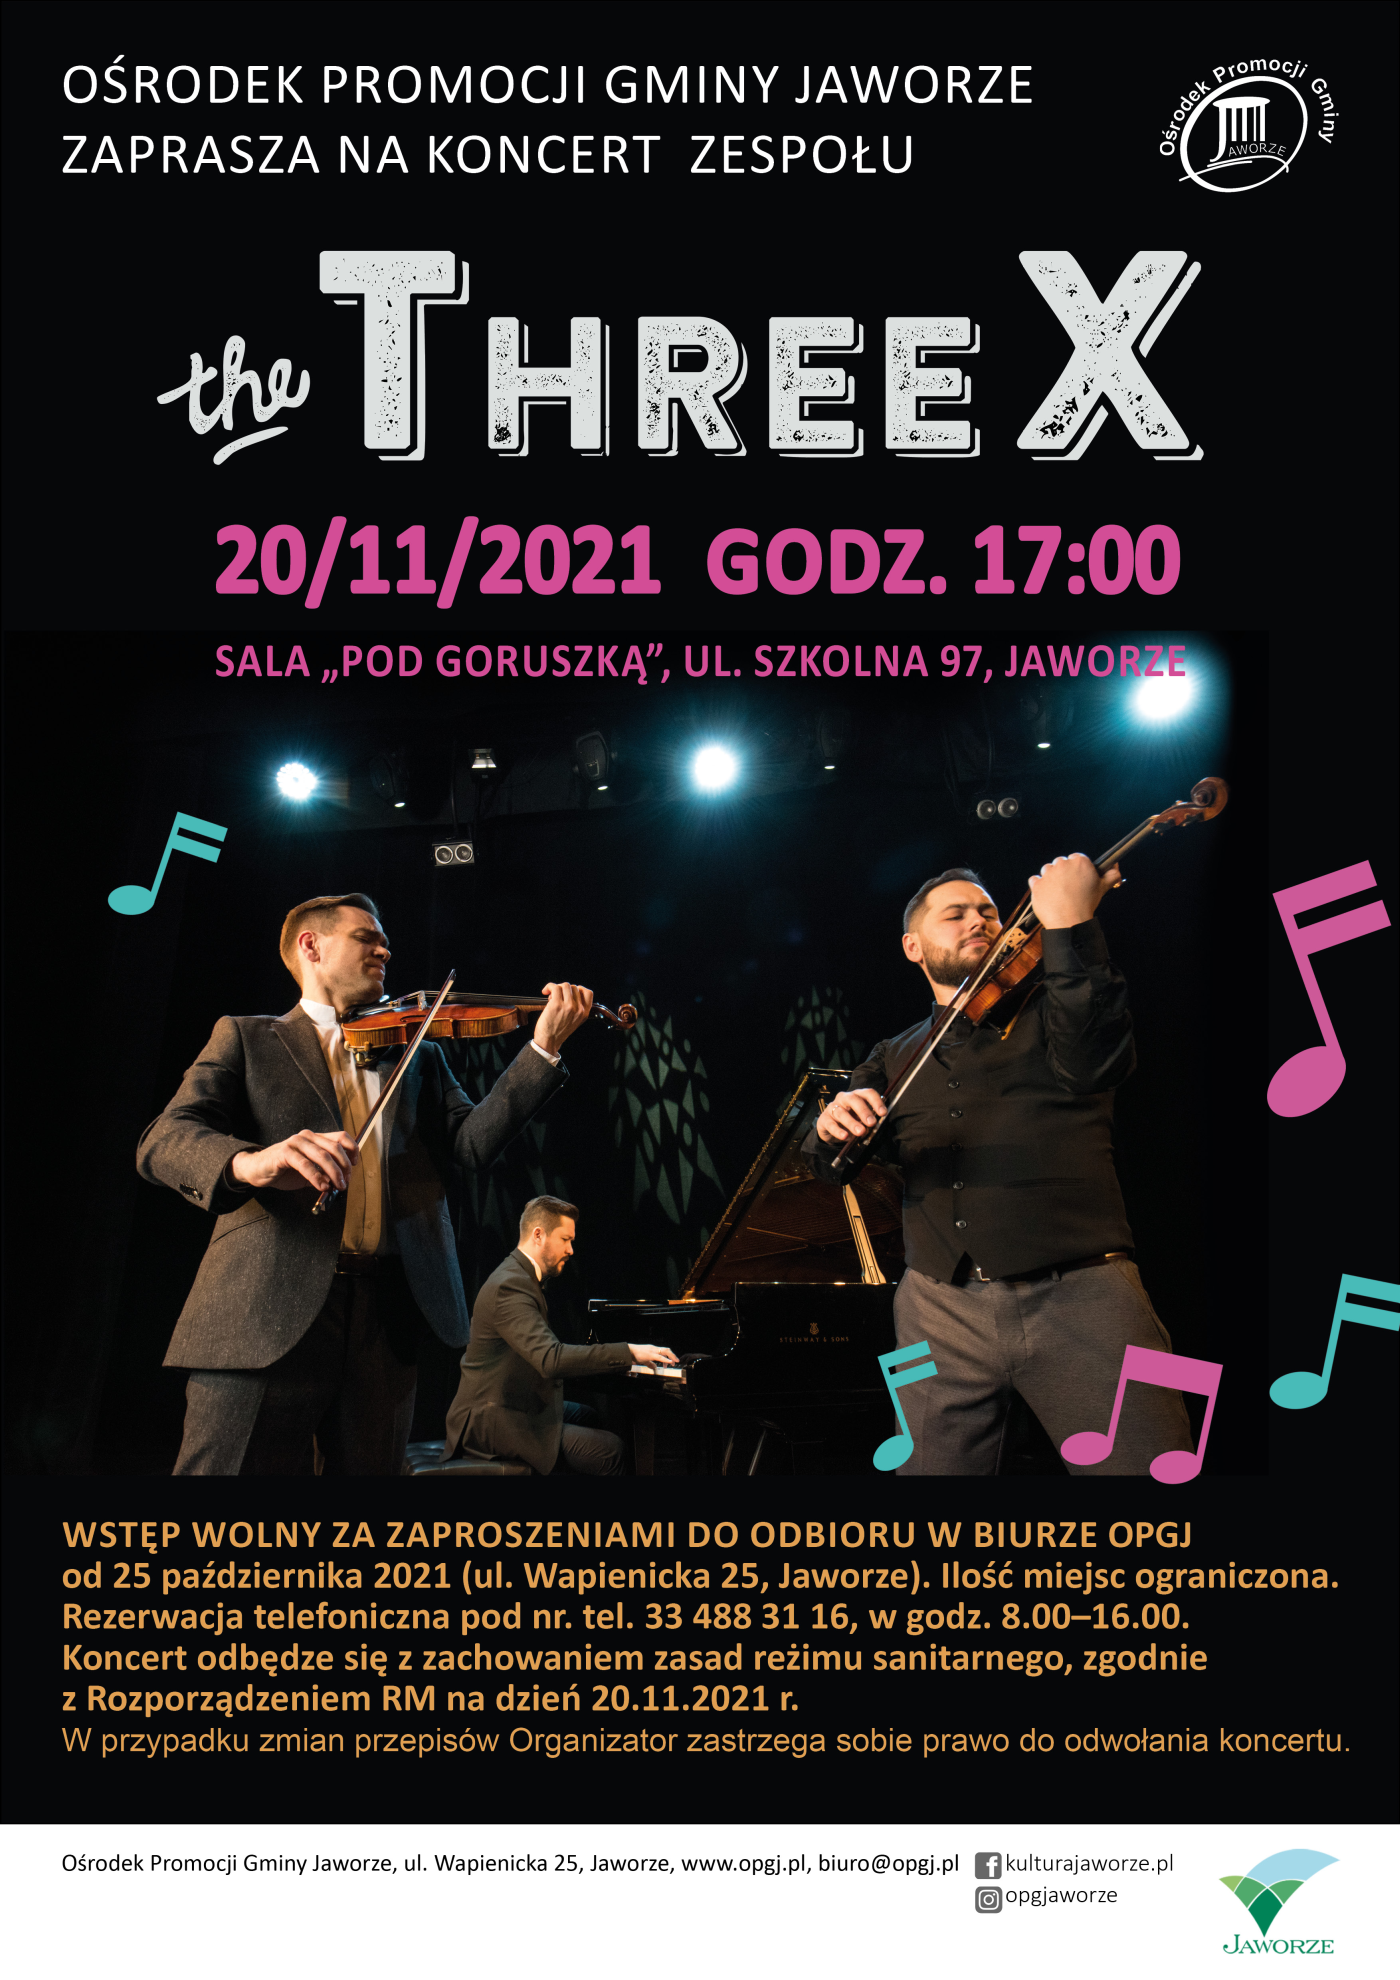 Plakat koncertu zespołu The Threex - informacje z plakatu powtórzone w treści artykułu. Fotografia mężczyzn - dwóch grających na skrzypach, jeden na fortepianie.